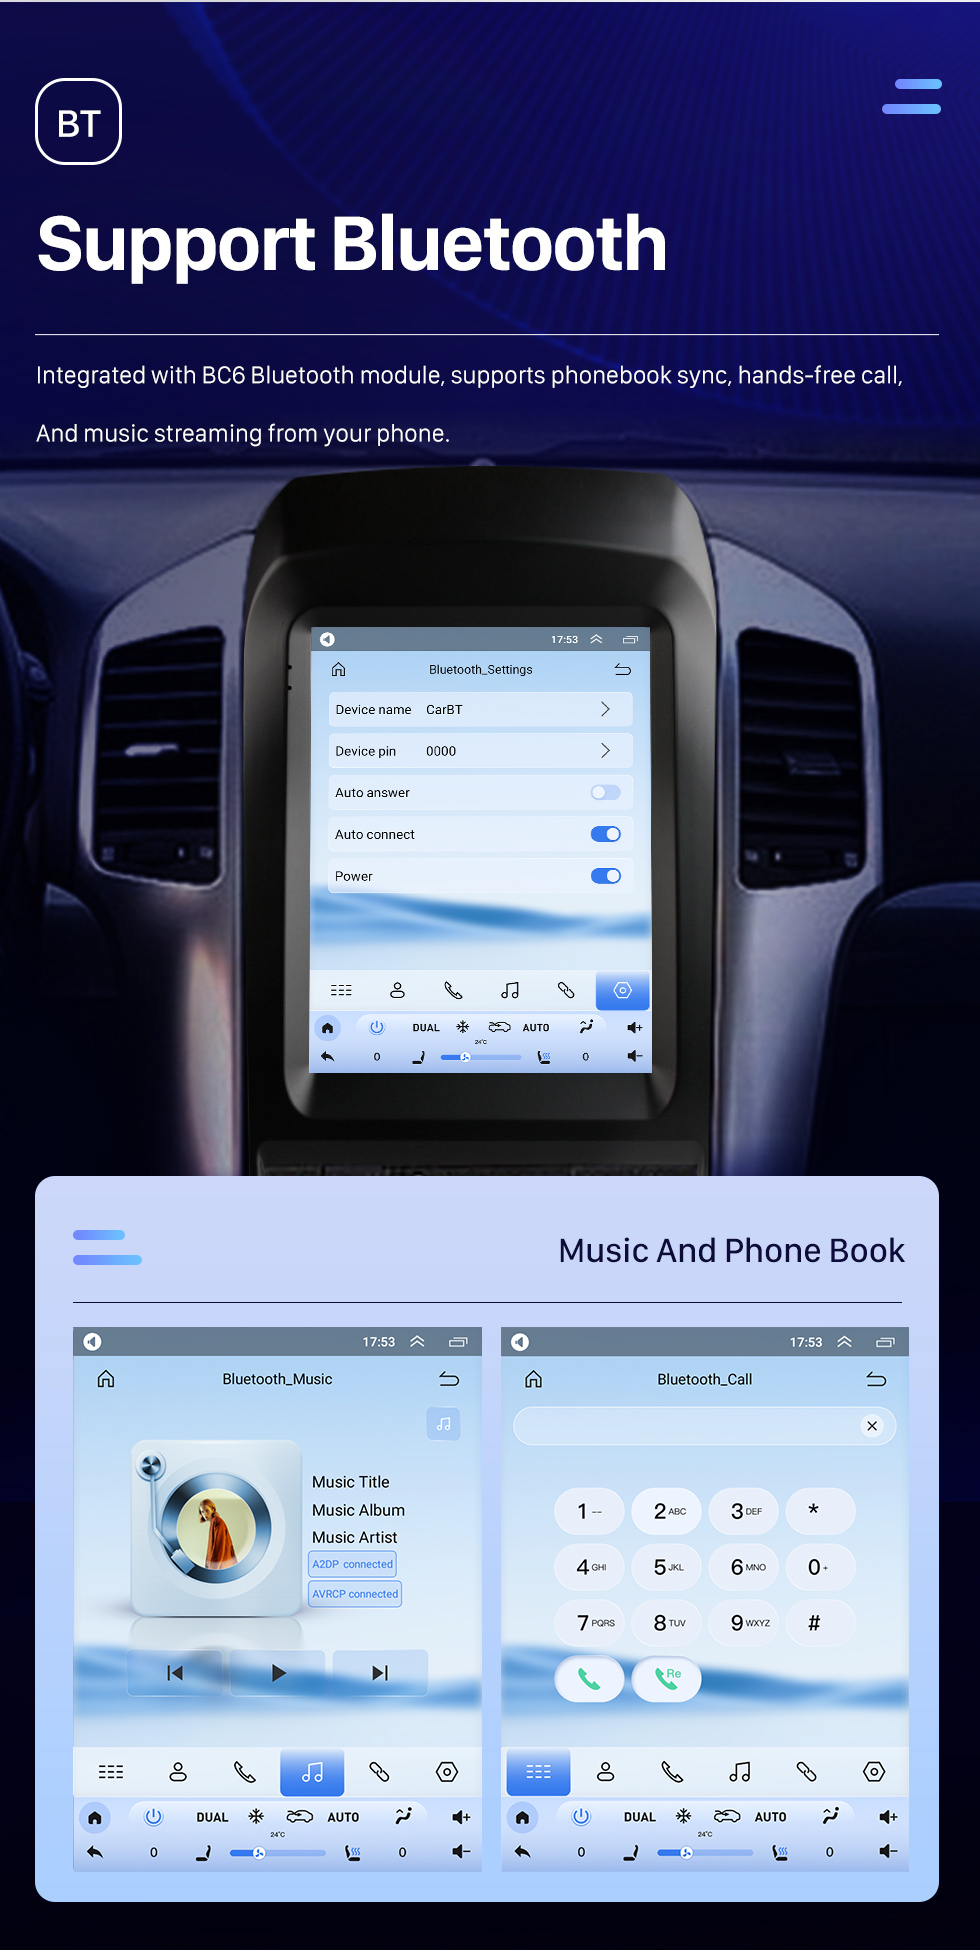 Seicane 9.7 pulgadas Android 10.0 Unidad principal Navegación GPS para 2006-2012 Chevy Chevrolet Captiva Radio USB con USB Bluetooth WIFI Soporte DVR OBD2 TPMS Control del volante